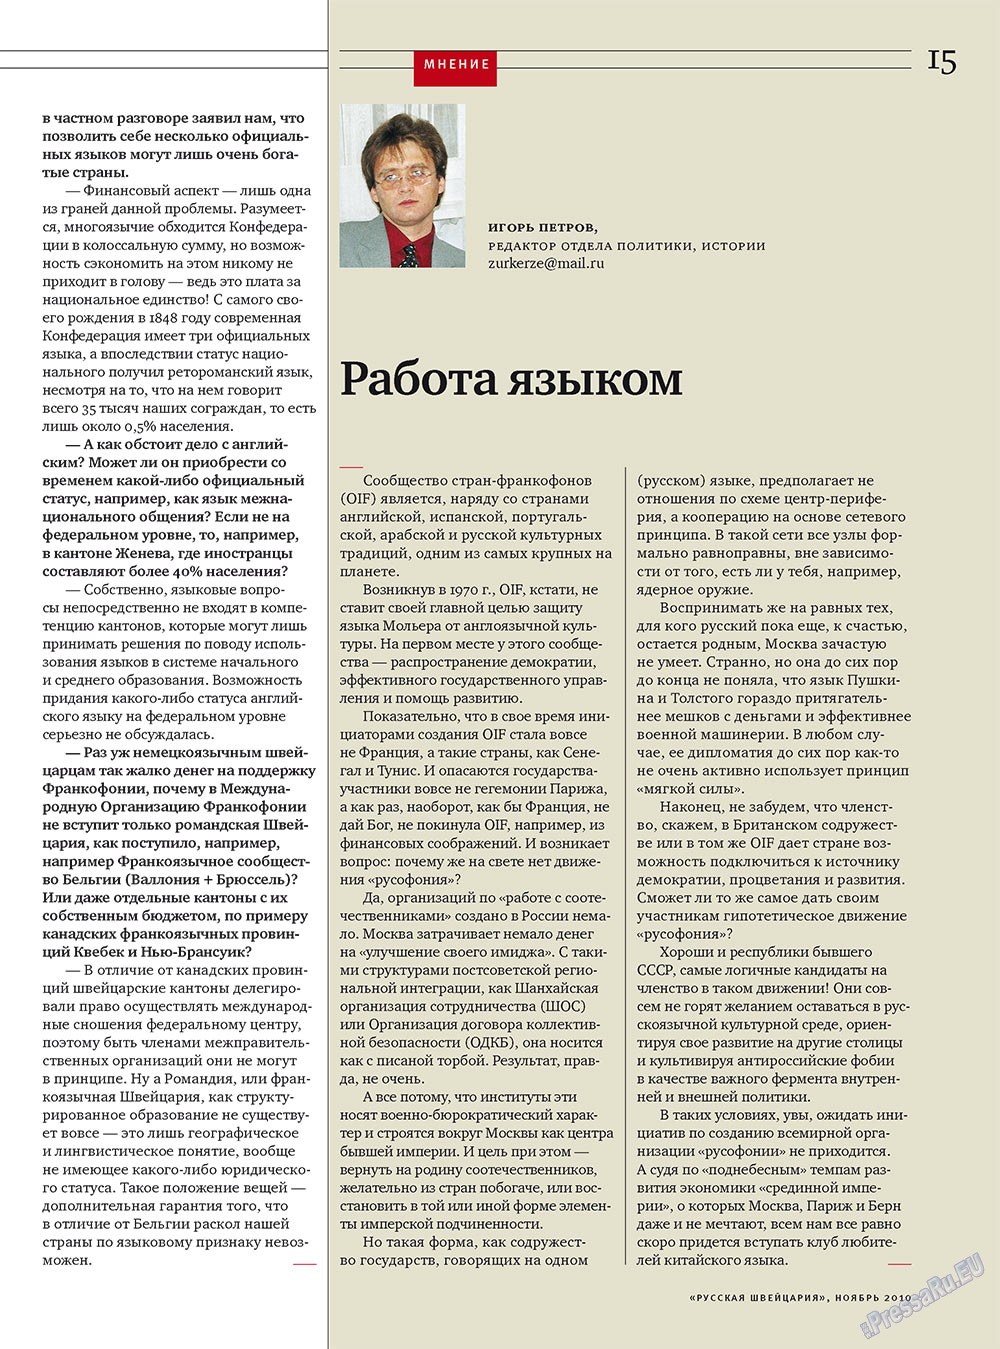 Русская Швейцария, журнал. 2010 №9 стр.15